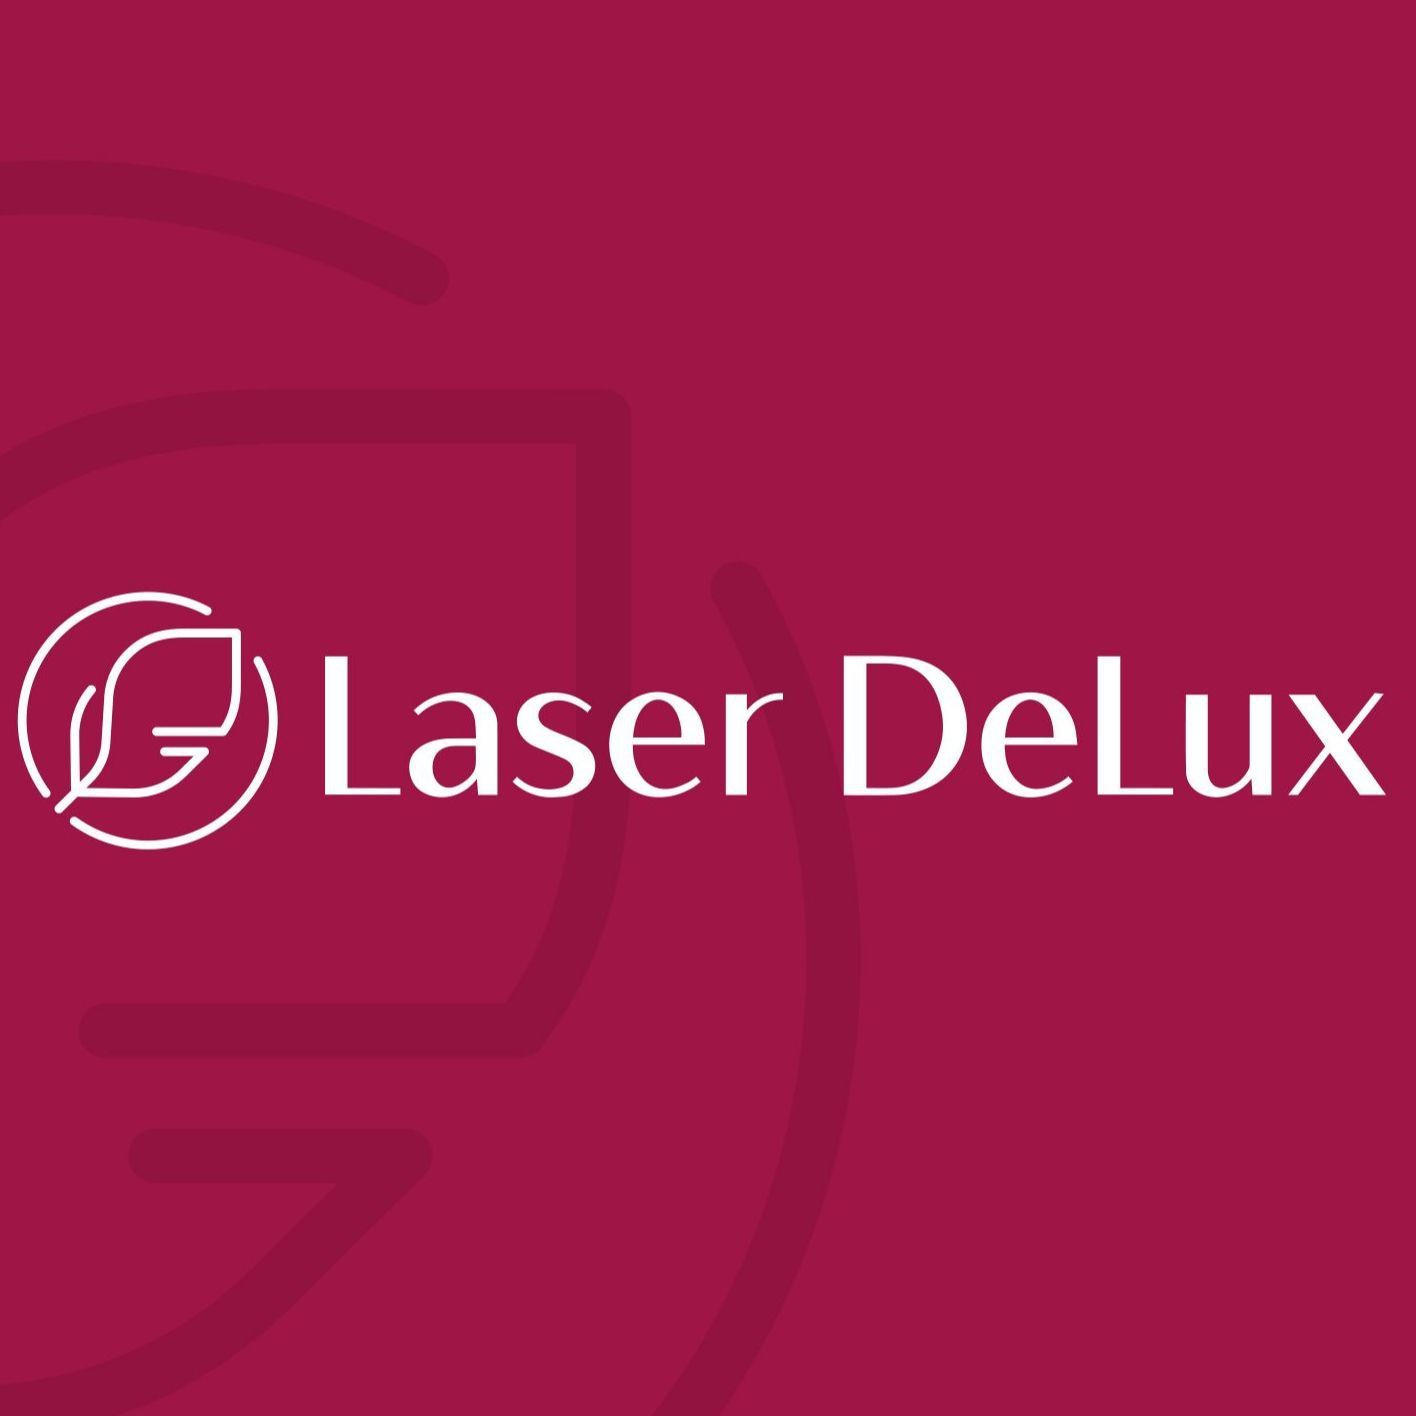 Laser DeLux® Kosmetyka Laserowa - Kielce, Wesoła 13/15, 25-305, Kielce